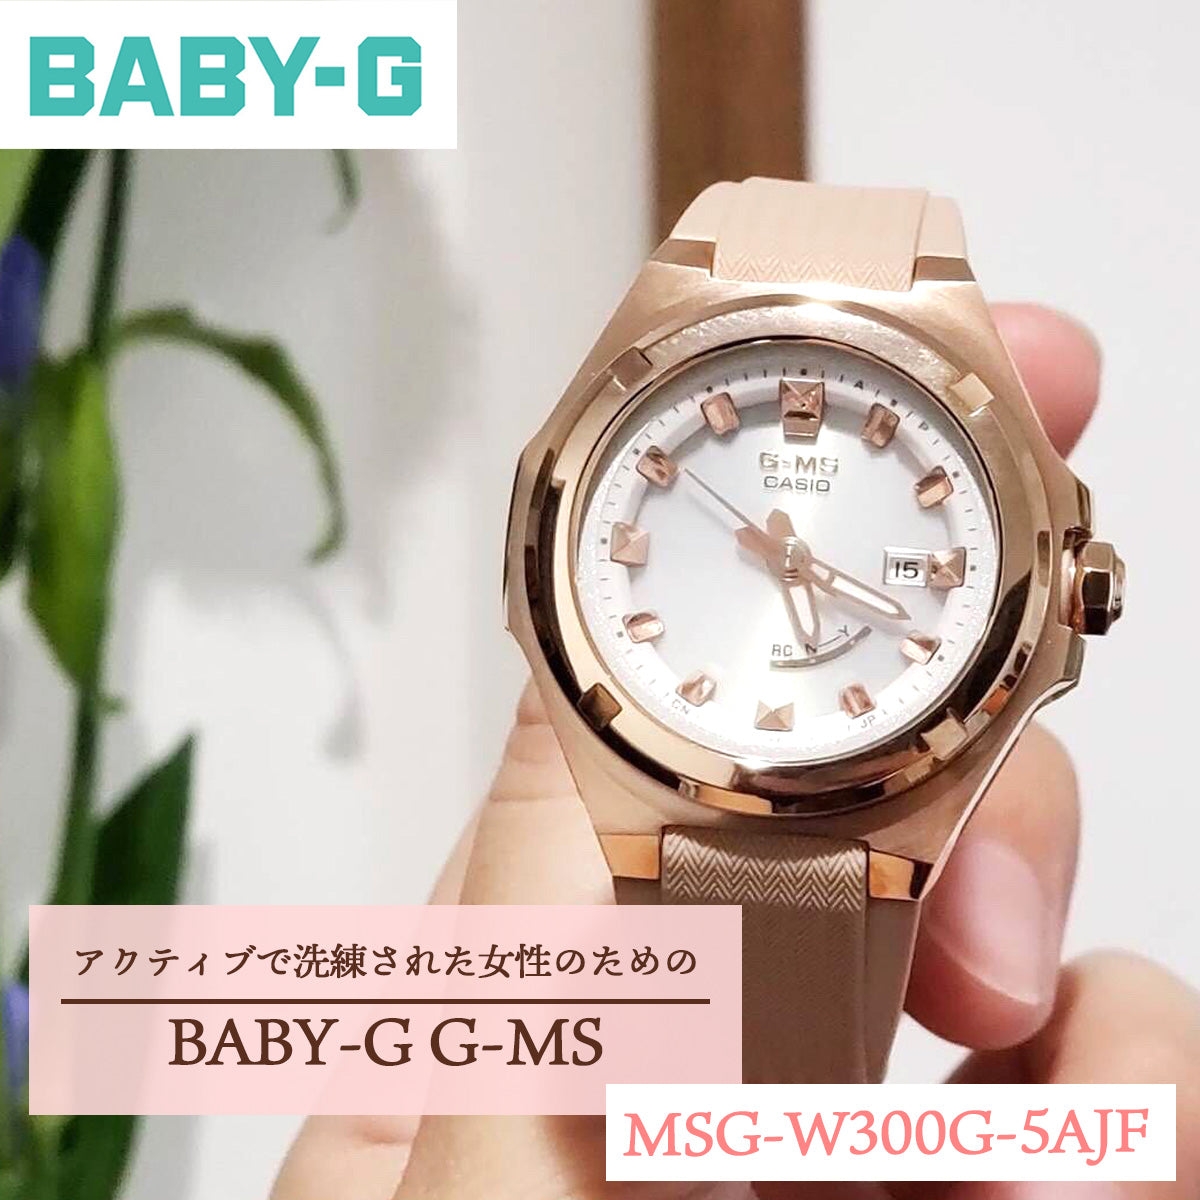 BABY-G G-MS スタッフおススメ12選 – neel selectshop